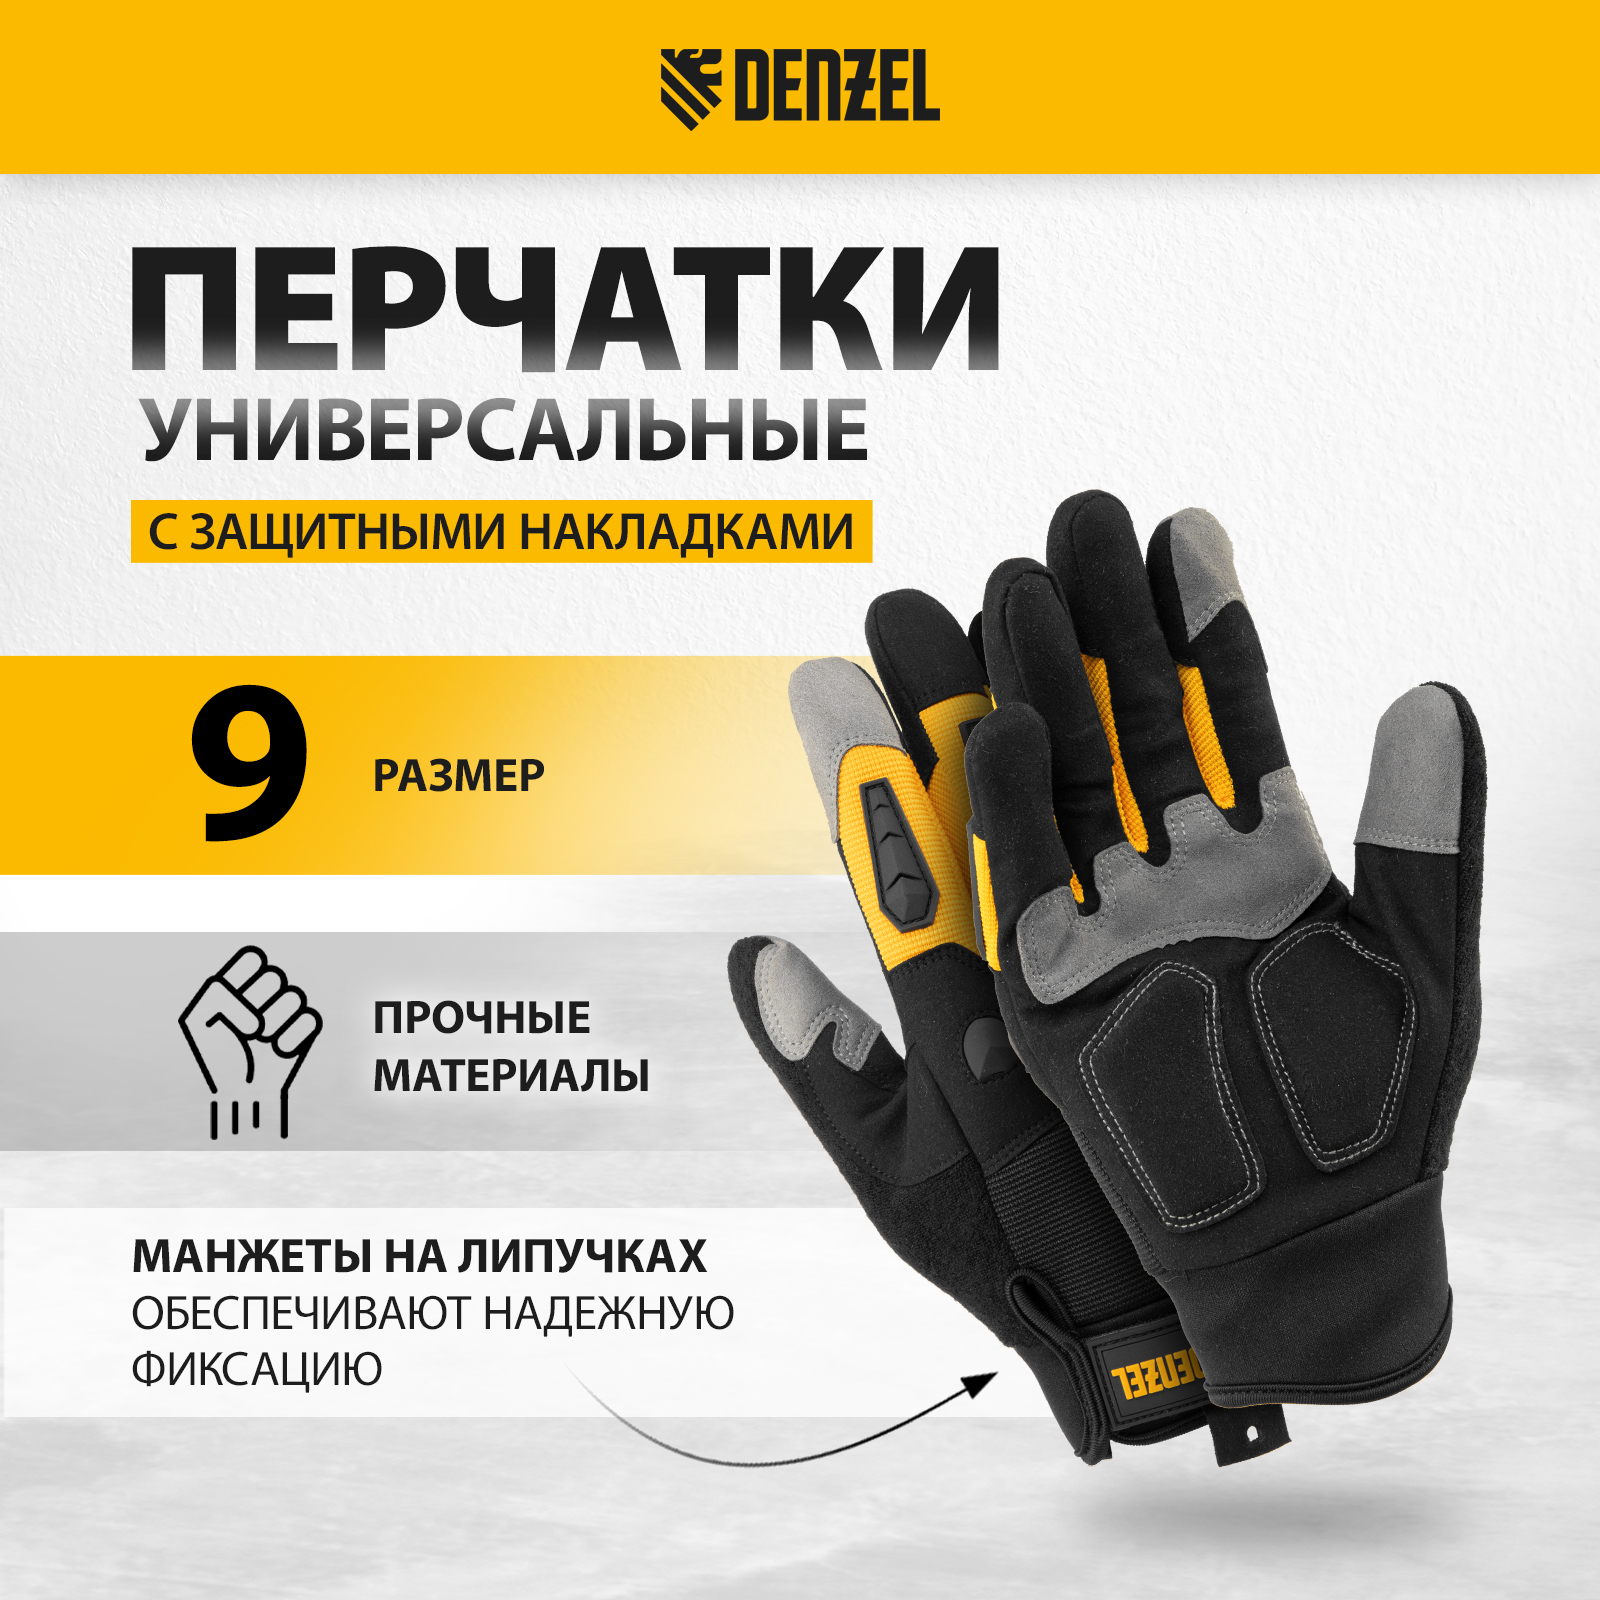 Перчатки универсальные DENZEL размер 9 68002 перчатки универсальные denzel размер 9 68002